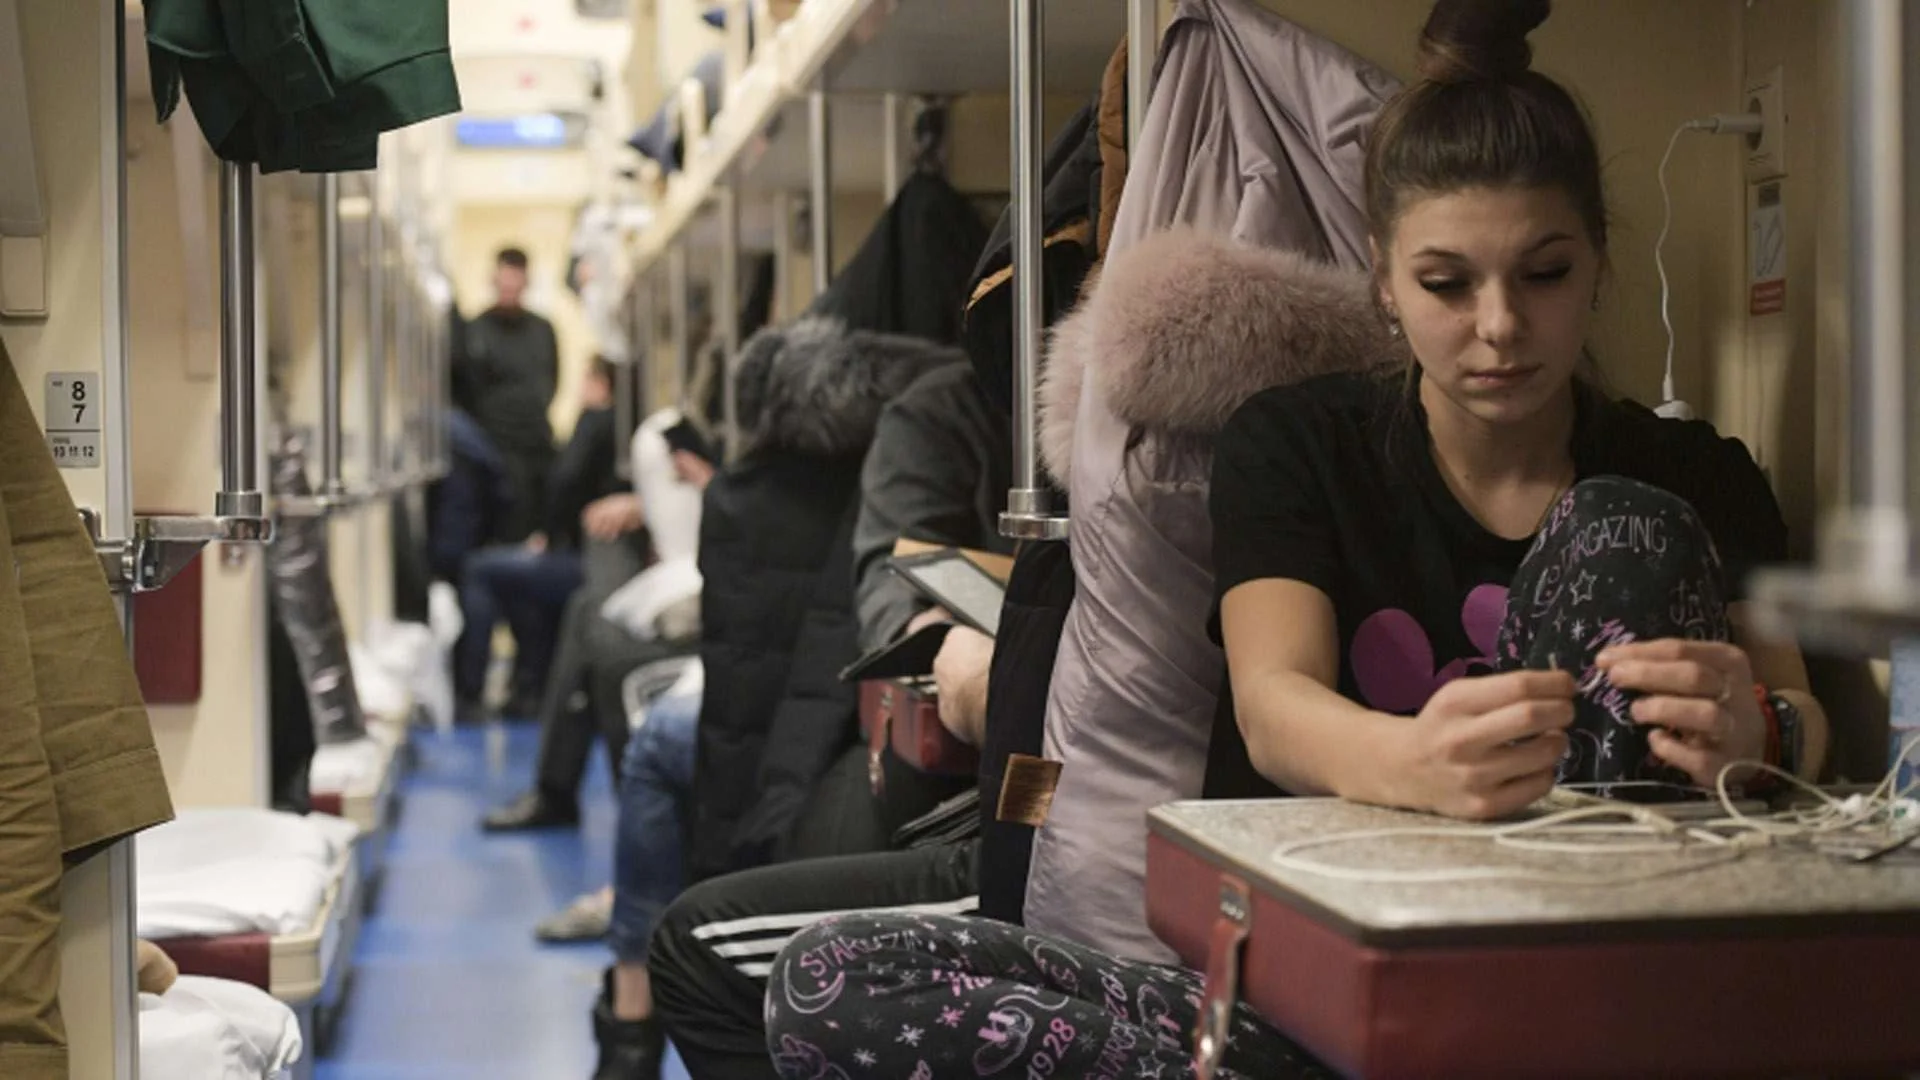 Пассажиры россия отзывы. Одежда в поезд. Одежда для путешествия в поезде. Одежда для поезда женская. Удобная одежда в поезд.